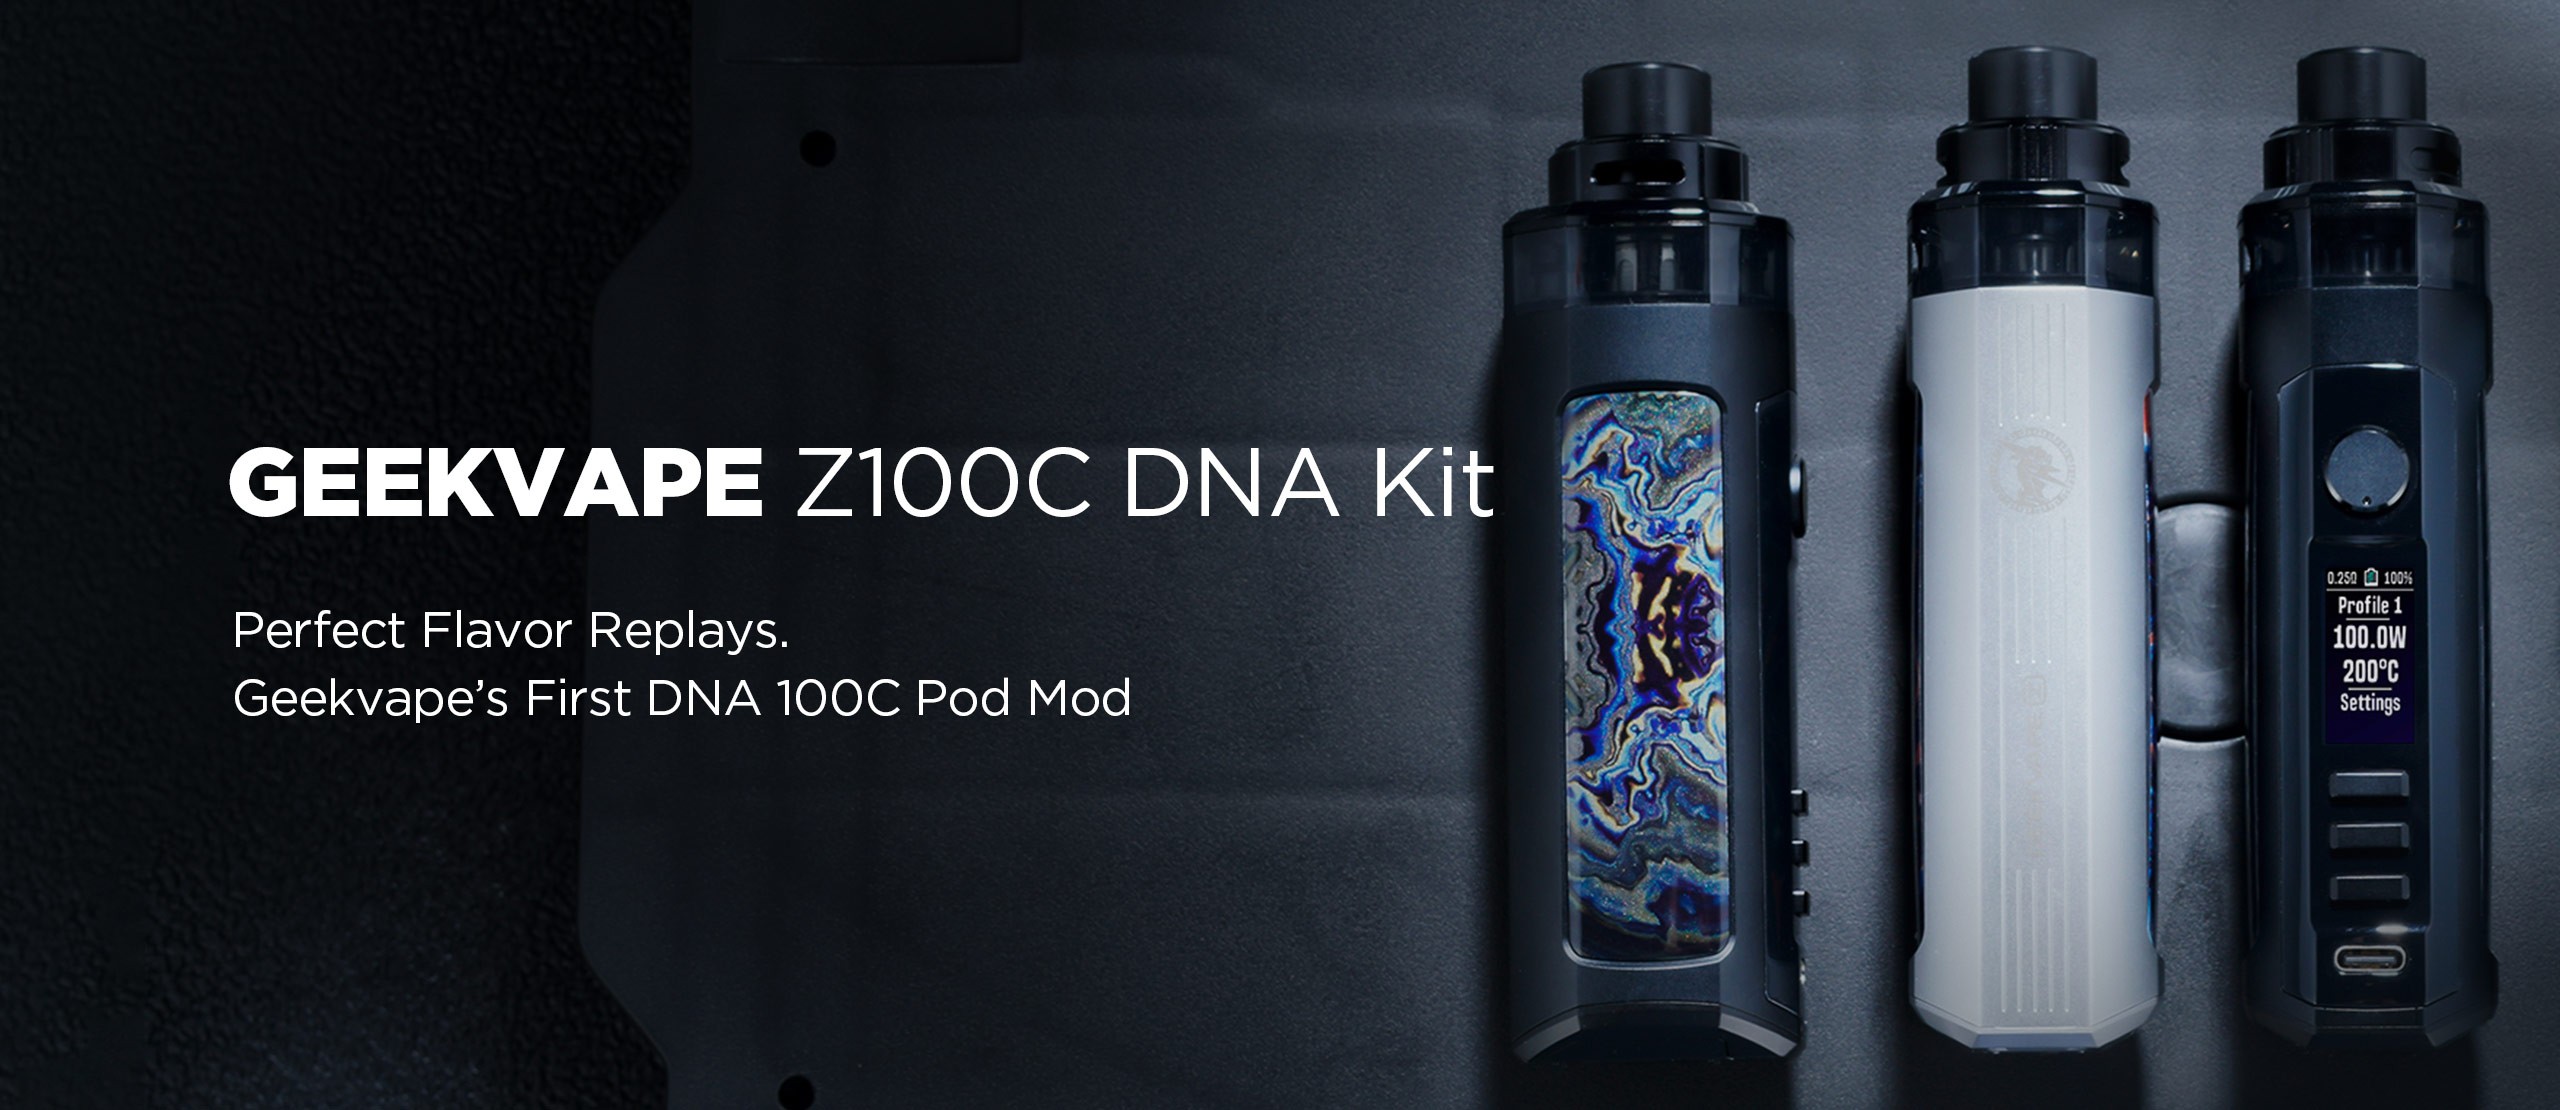 Z100C DNA Kit For Sale 